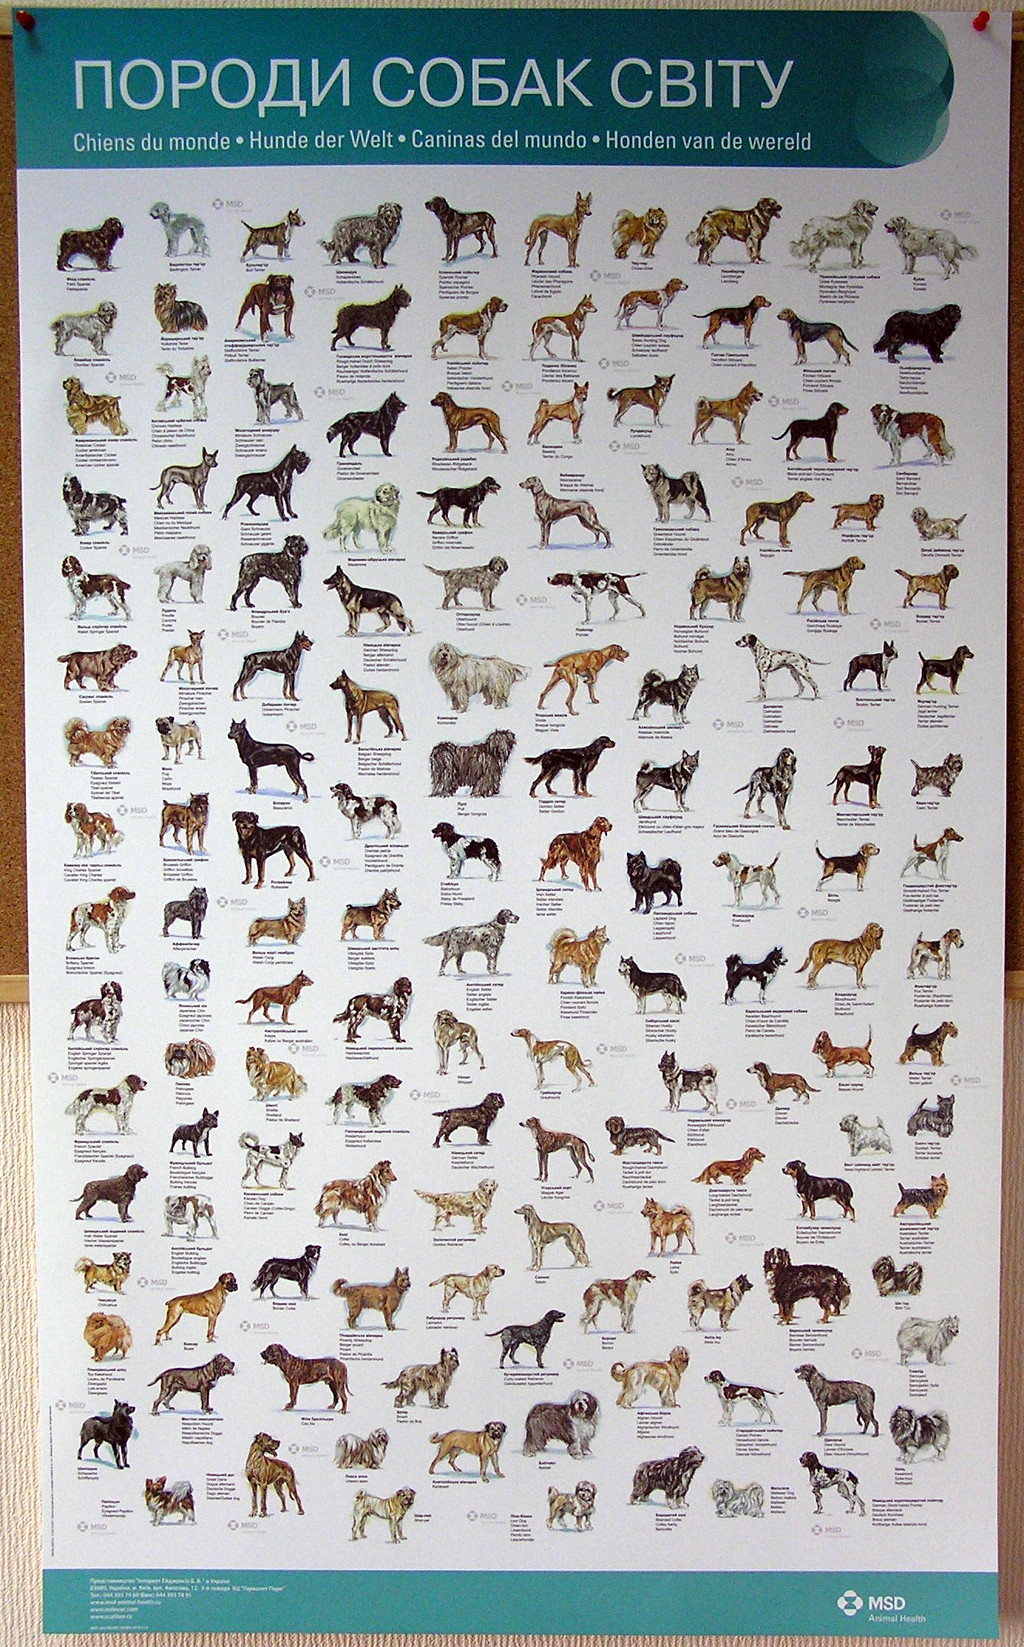 Друк плакатів «Породи собак світу». Поліграфія друкарні Макрос, виготовлення плакатів, специфікація 959998-1